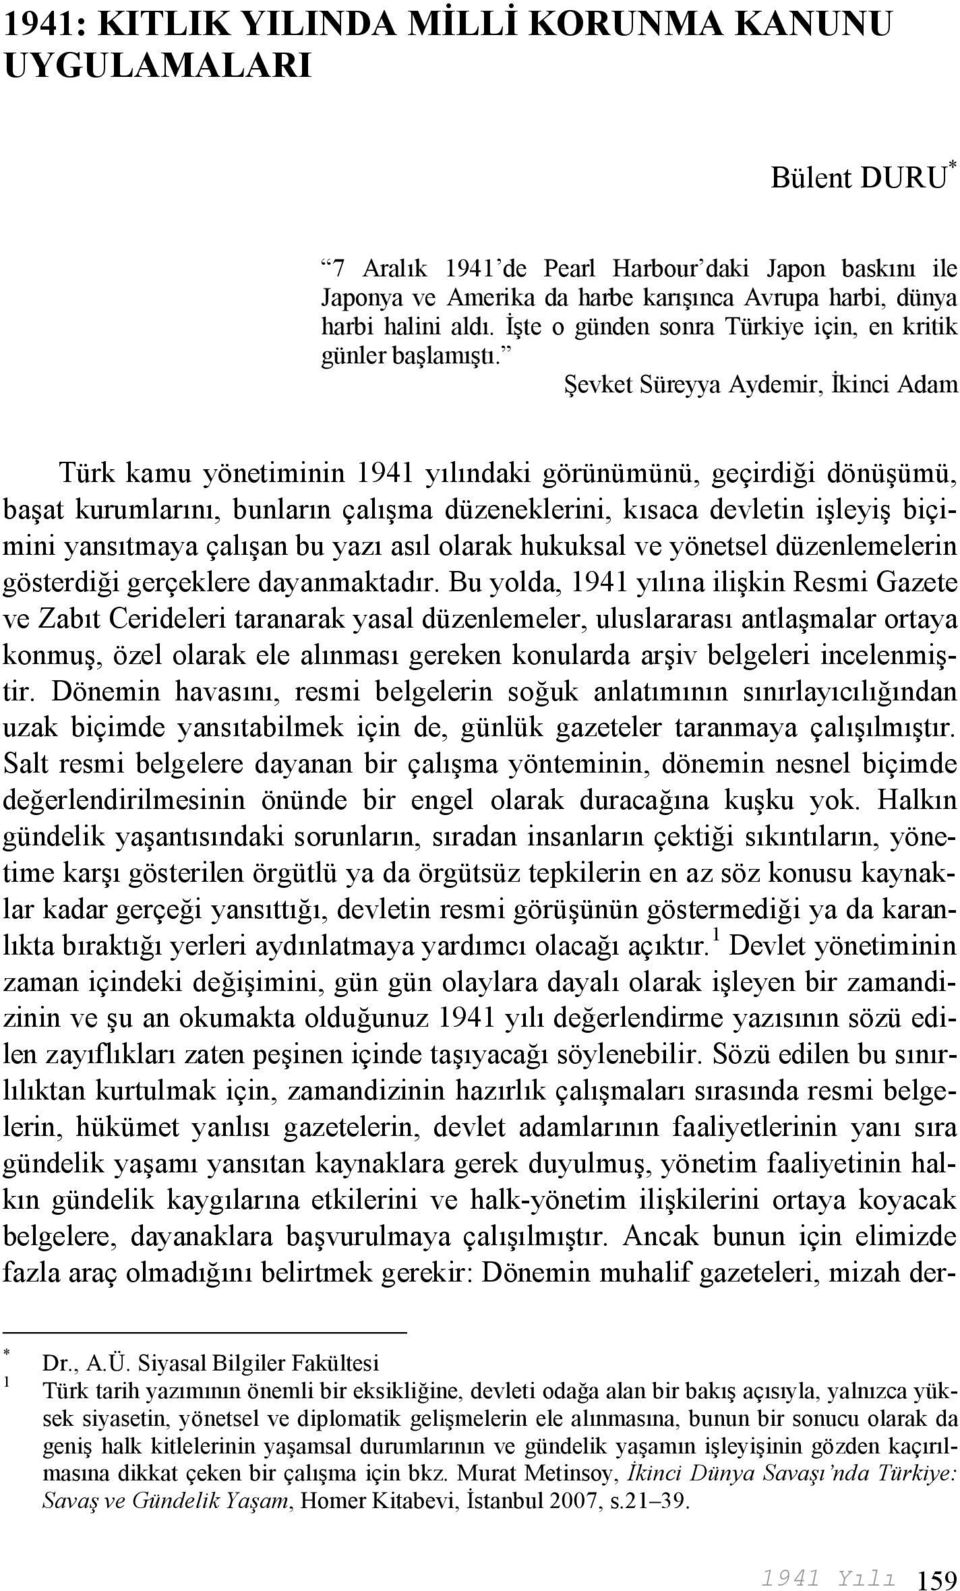 Şevket Süreyya Aydemir, İkinci Adam Türk kamu yönetiminin 1941 yılındaki görünümünü, geçirdiği dönüşümü, başat kurumlarını, bunların çalışma düzeneklerini, kısaca devletin işleyiş biçimini yansıtmaya